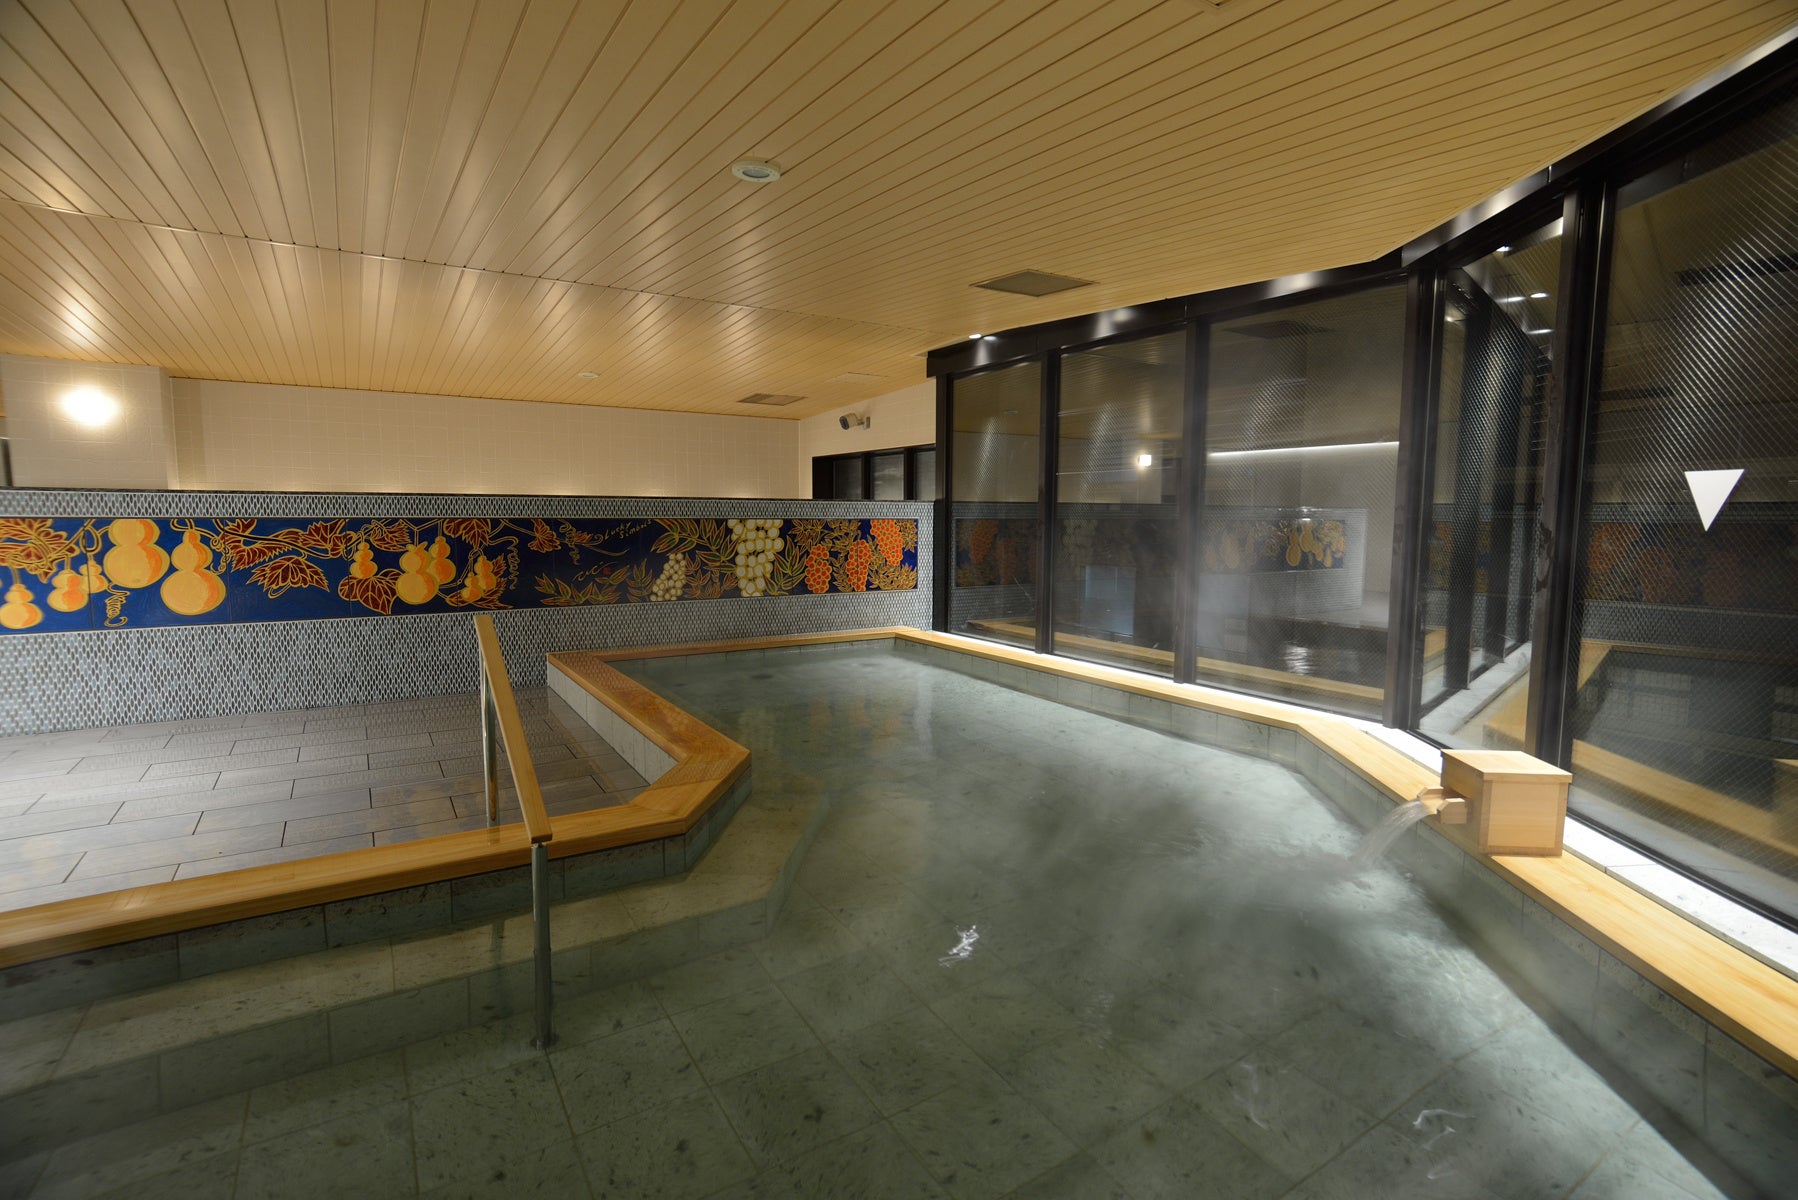 美肌効果が科学的に証明された京都温泉、京都府で初めて「美肌温泉証」を取得 – 希少な2つの源泉（京・美肌の湯）の秘密